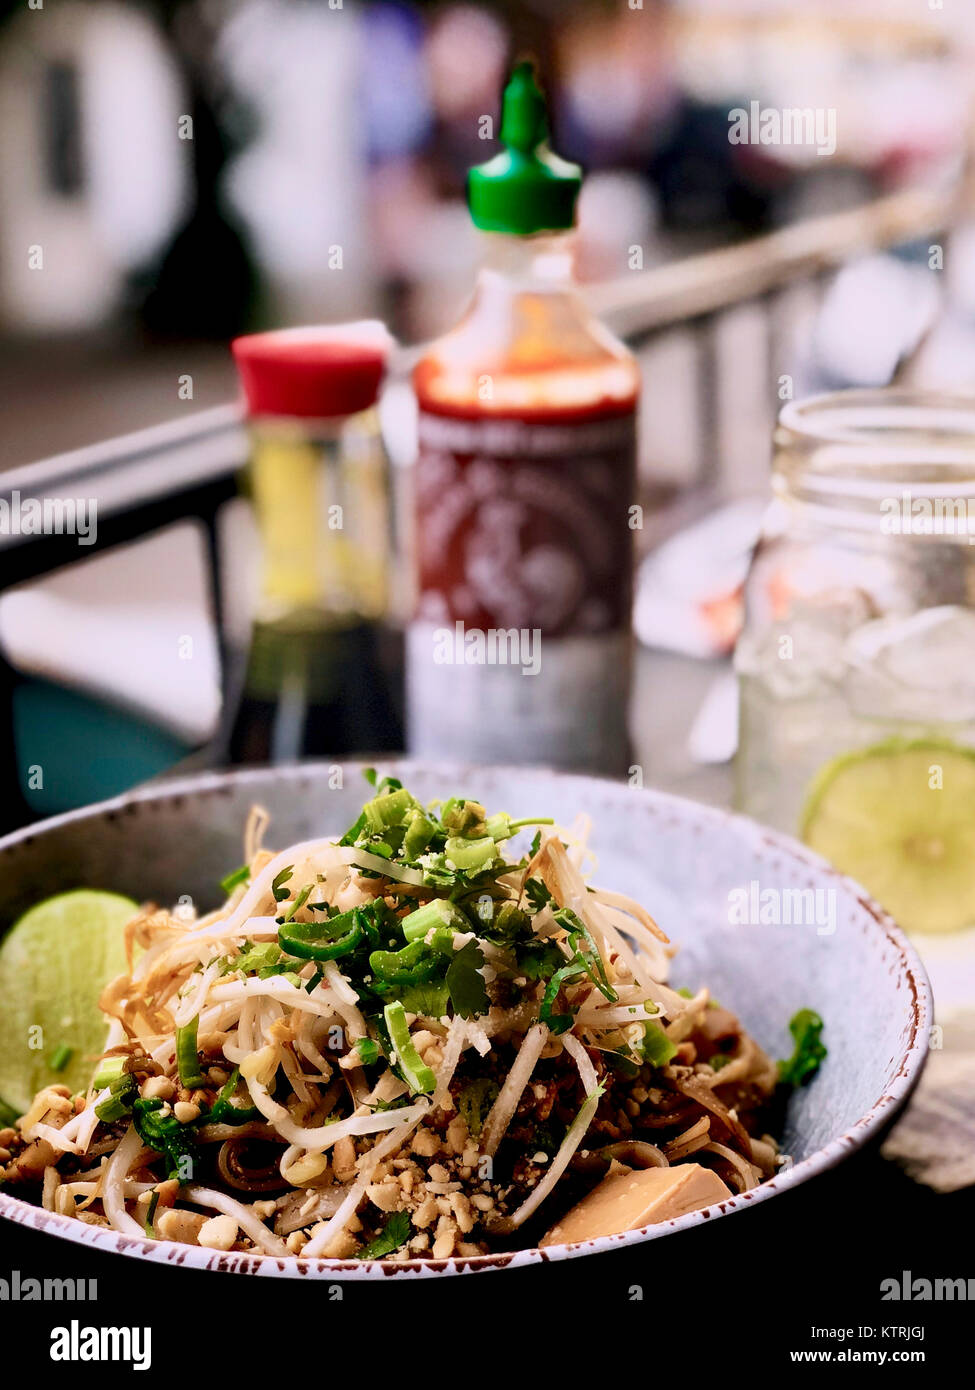 Pad Thai - asiatische Street Food gebraten Nudelgericht aus Thailand Stockfoto